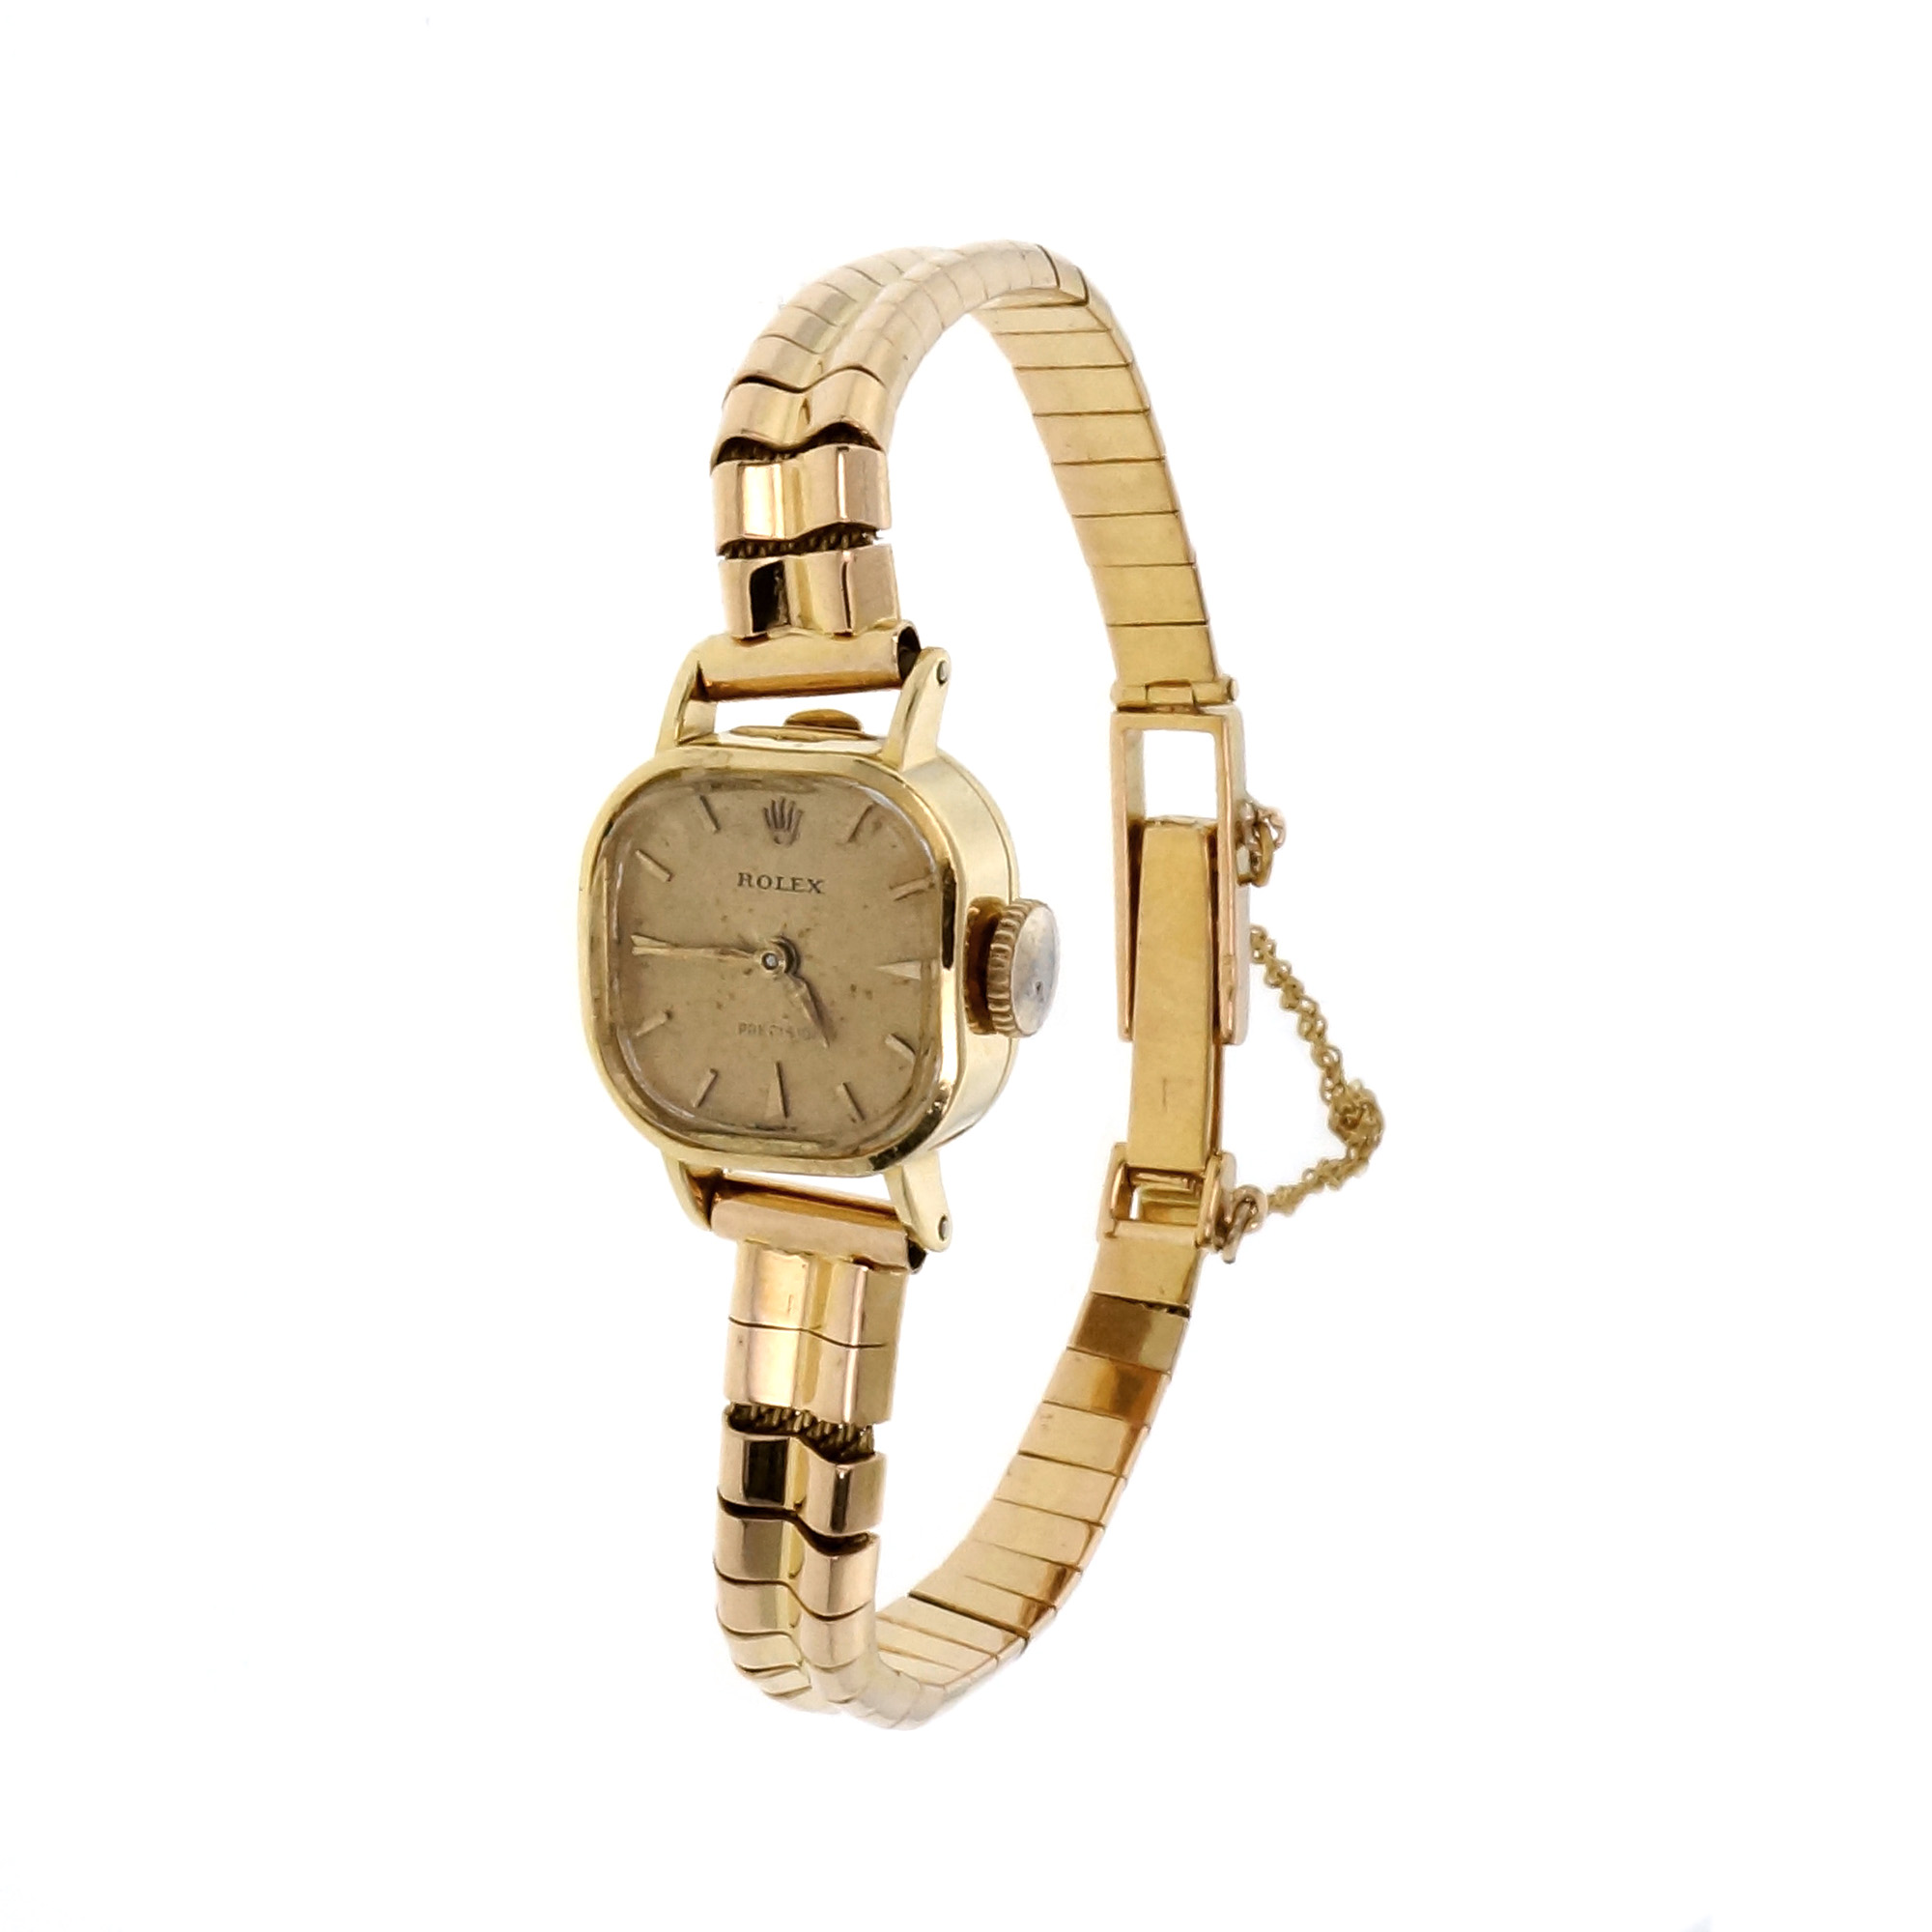 Vintage Rolex Ladies 1960 Dress Watch 18k Yellow Gold | eBay